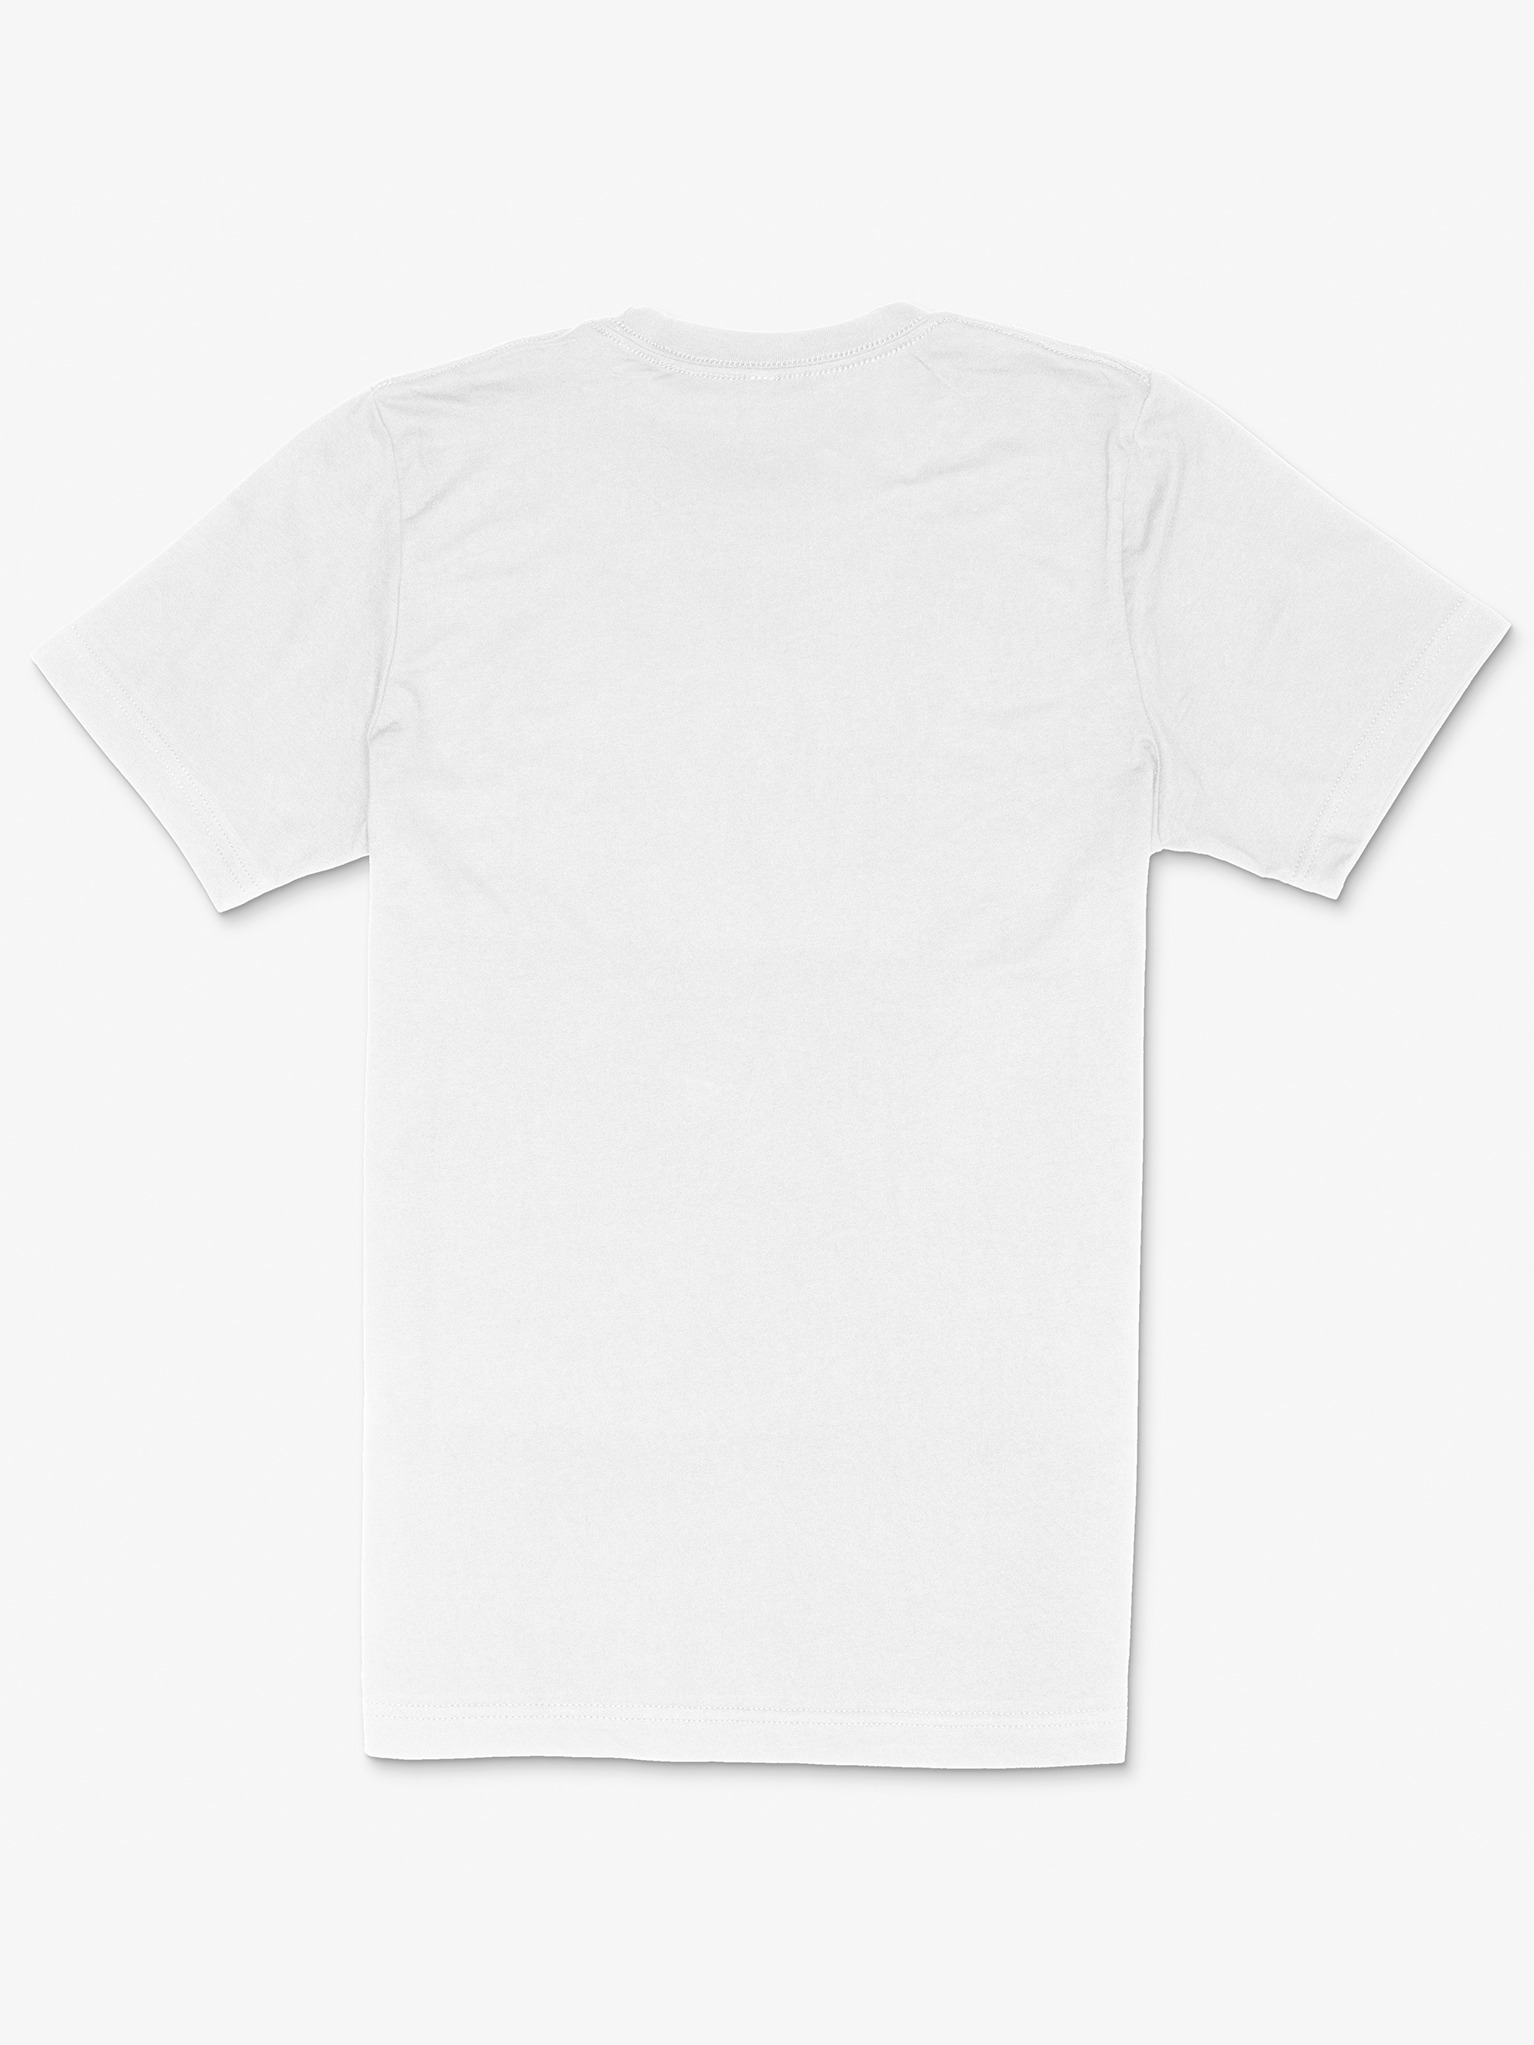 Ten Toes Down Original White T-Shirt | Ten Toes Down